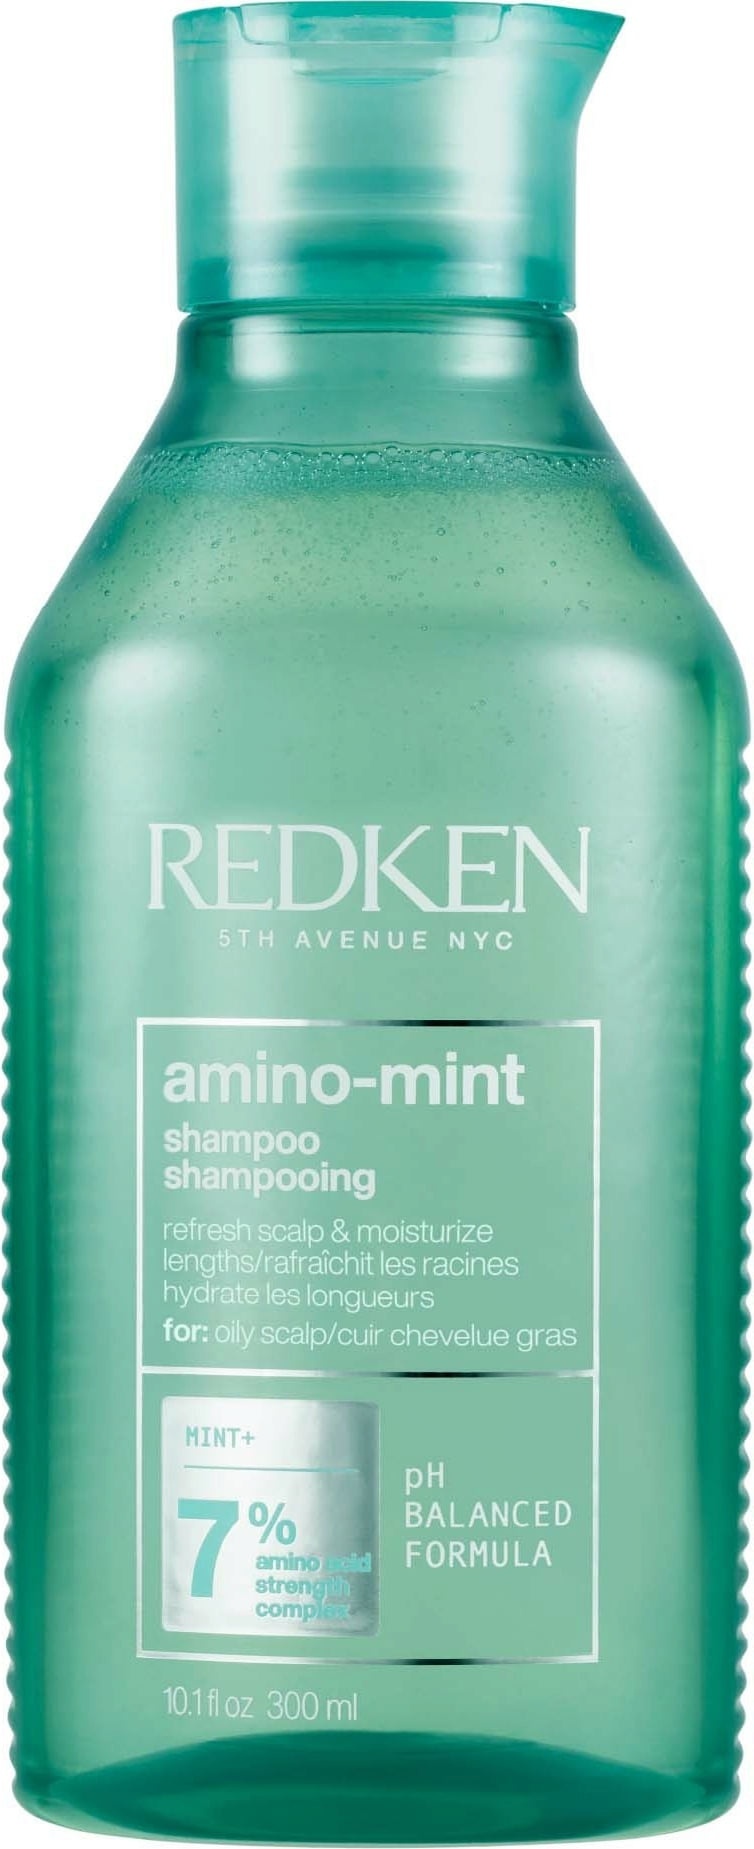 Redken Amino-mint Shampoo